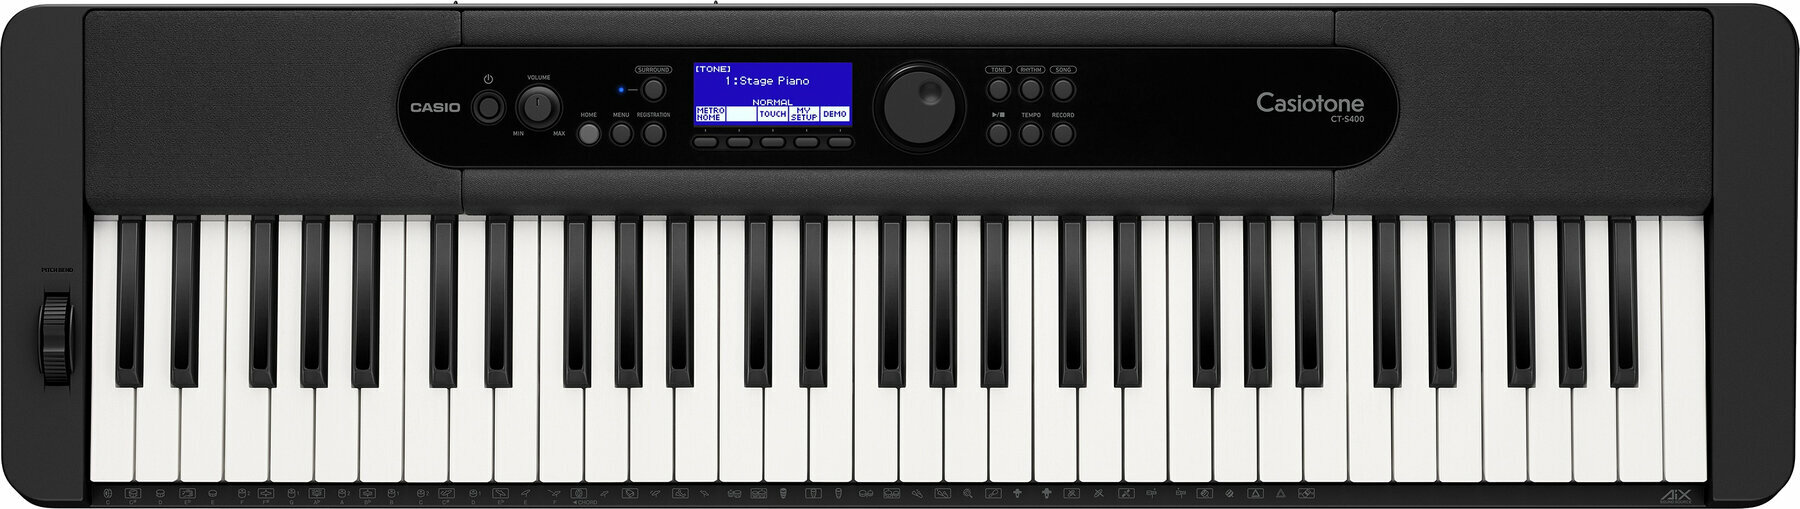 Keyboard mit Touch Response Casio CT-S400 (Nur ausgepackt)